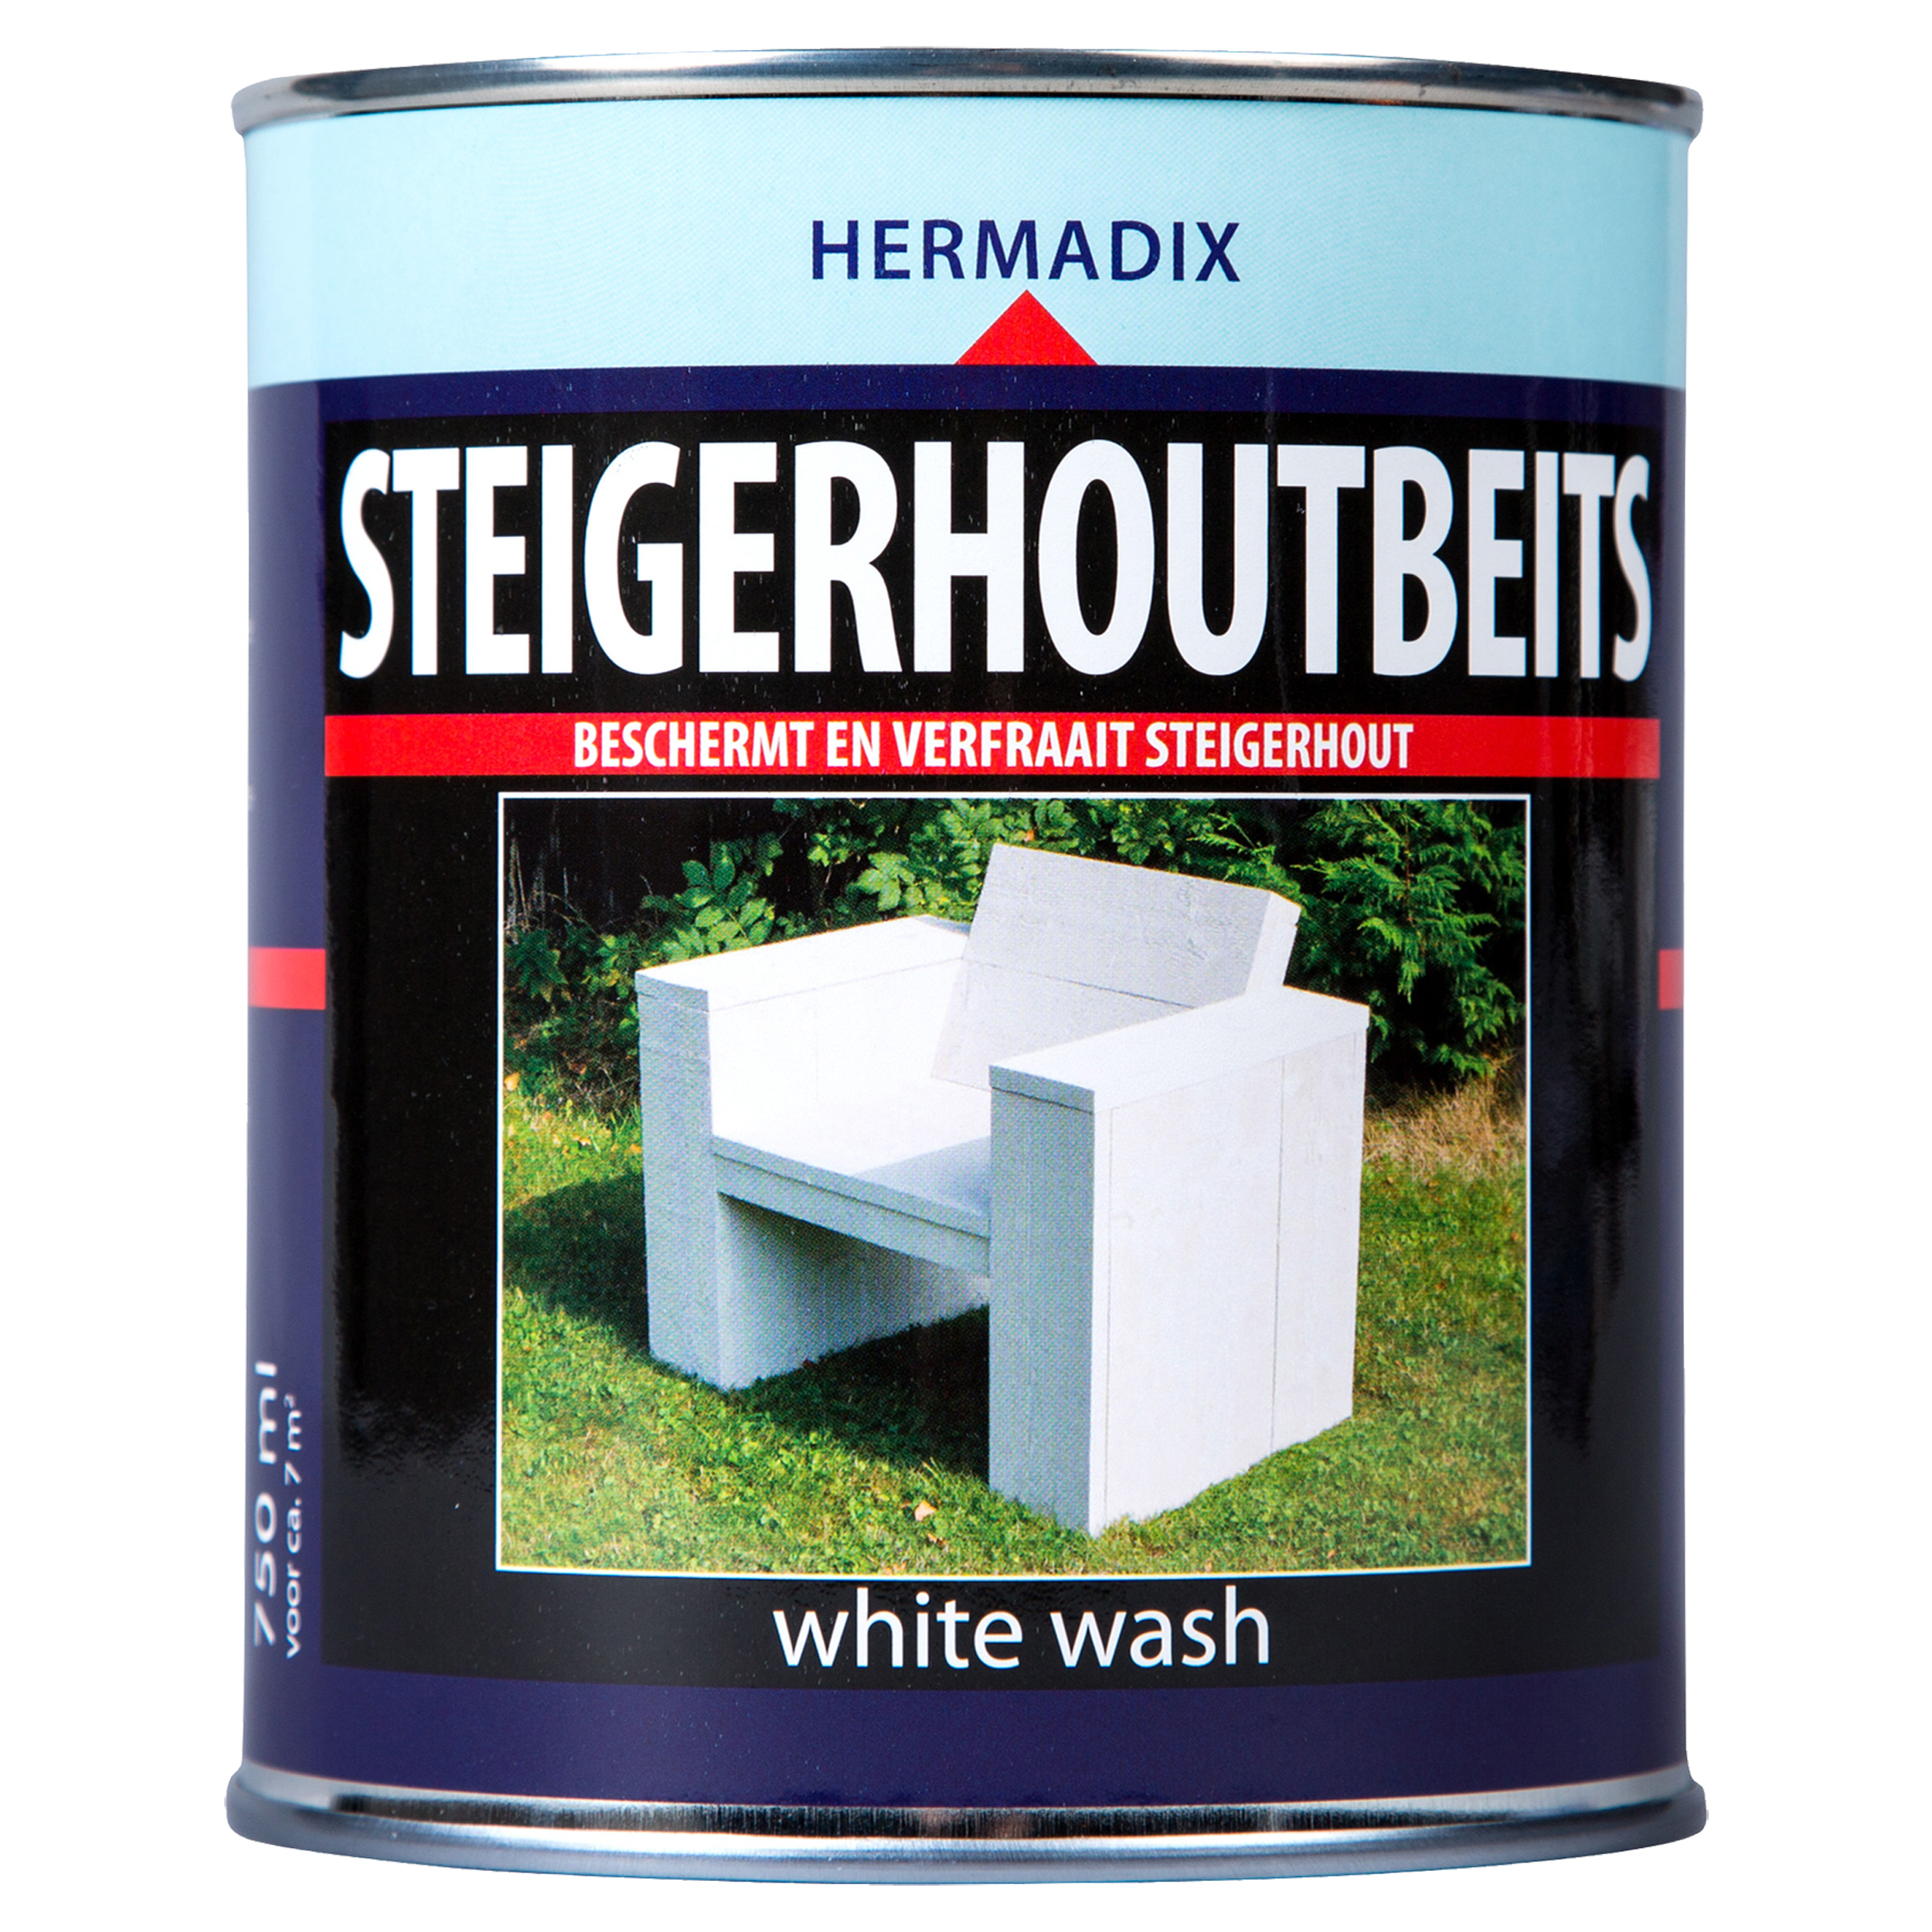 Steigerhoutbeits white wash